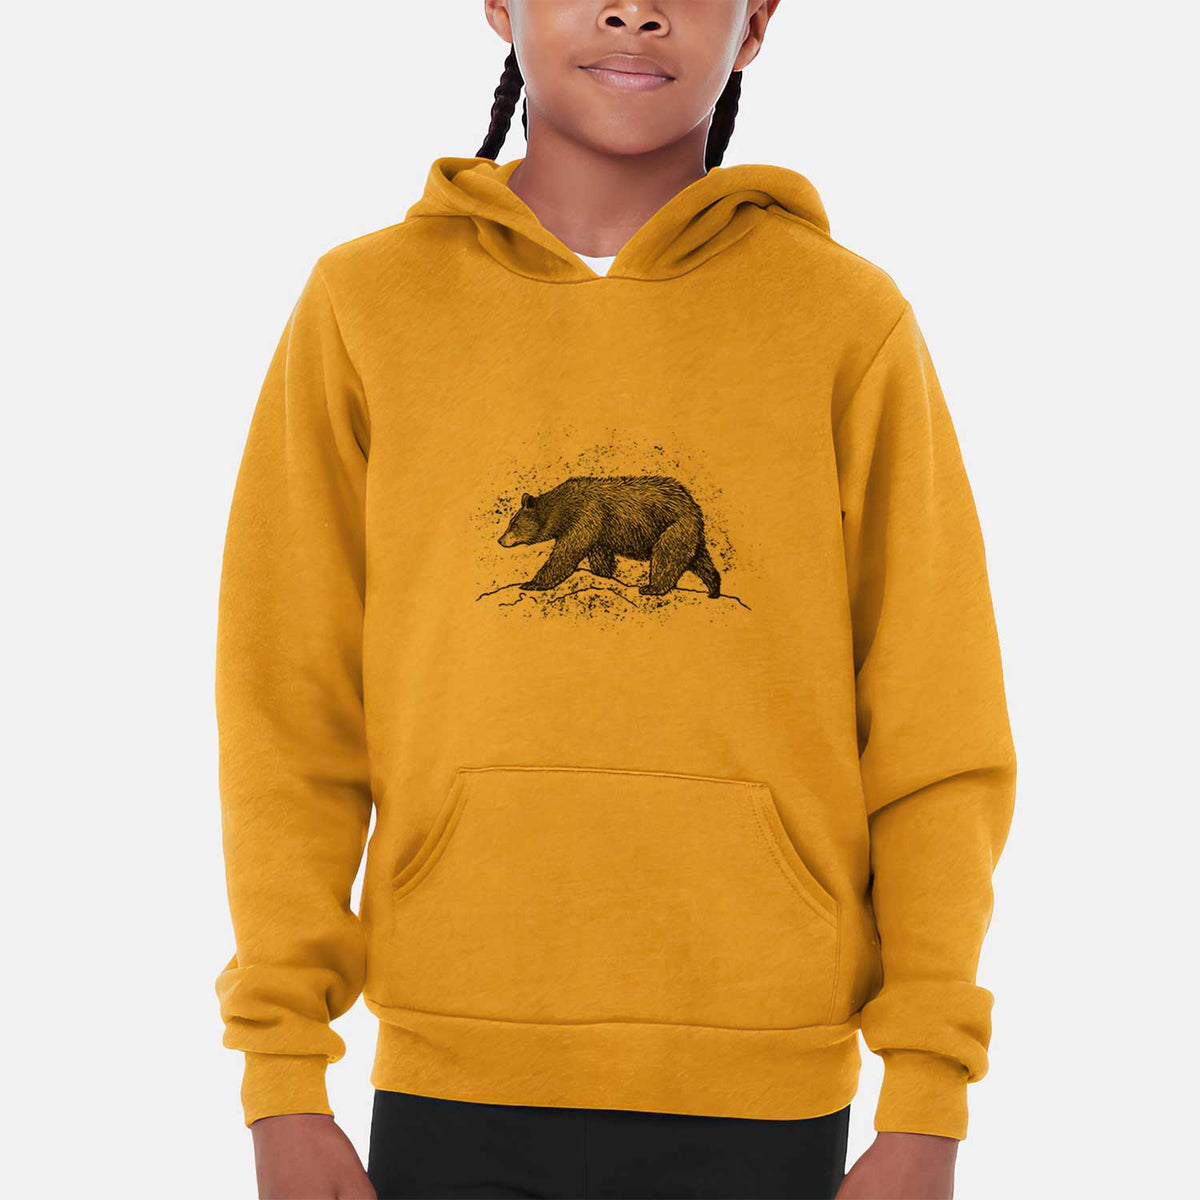 Black Bear - Youth Hoodie Sweatshirt